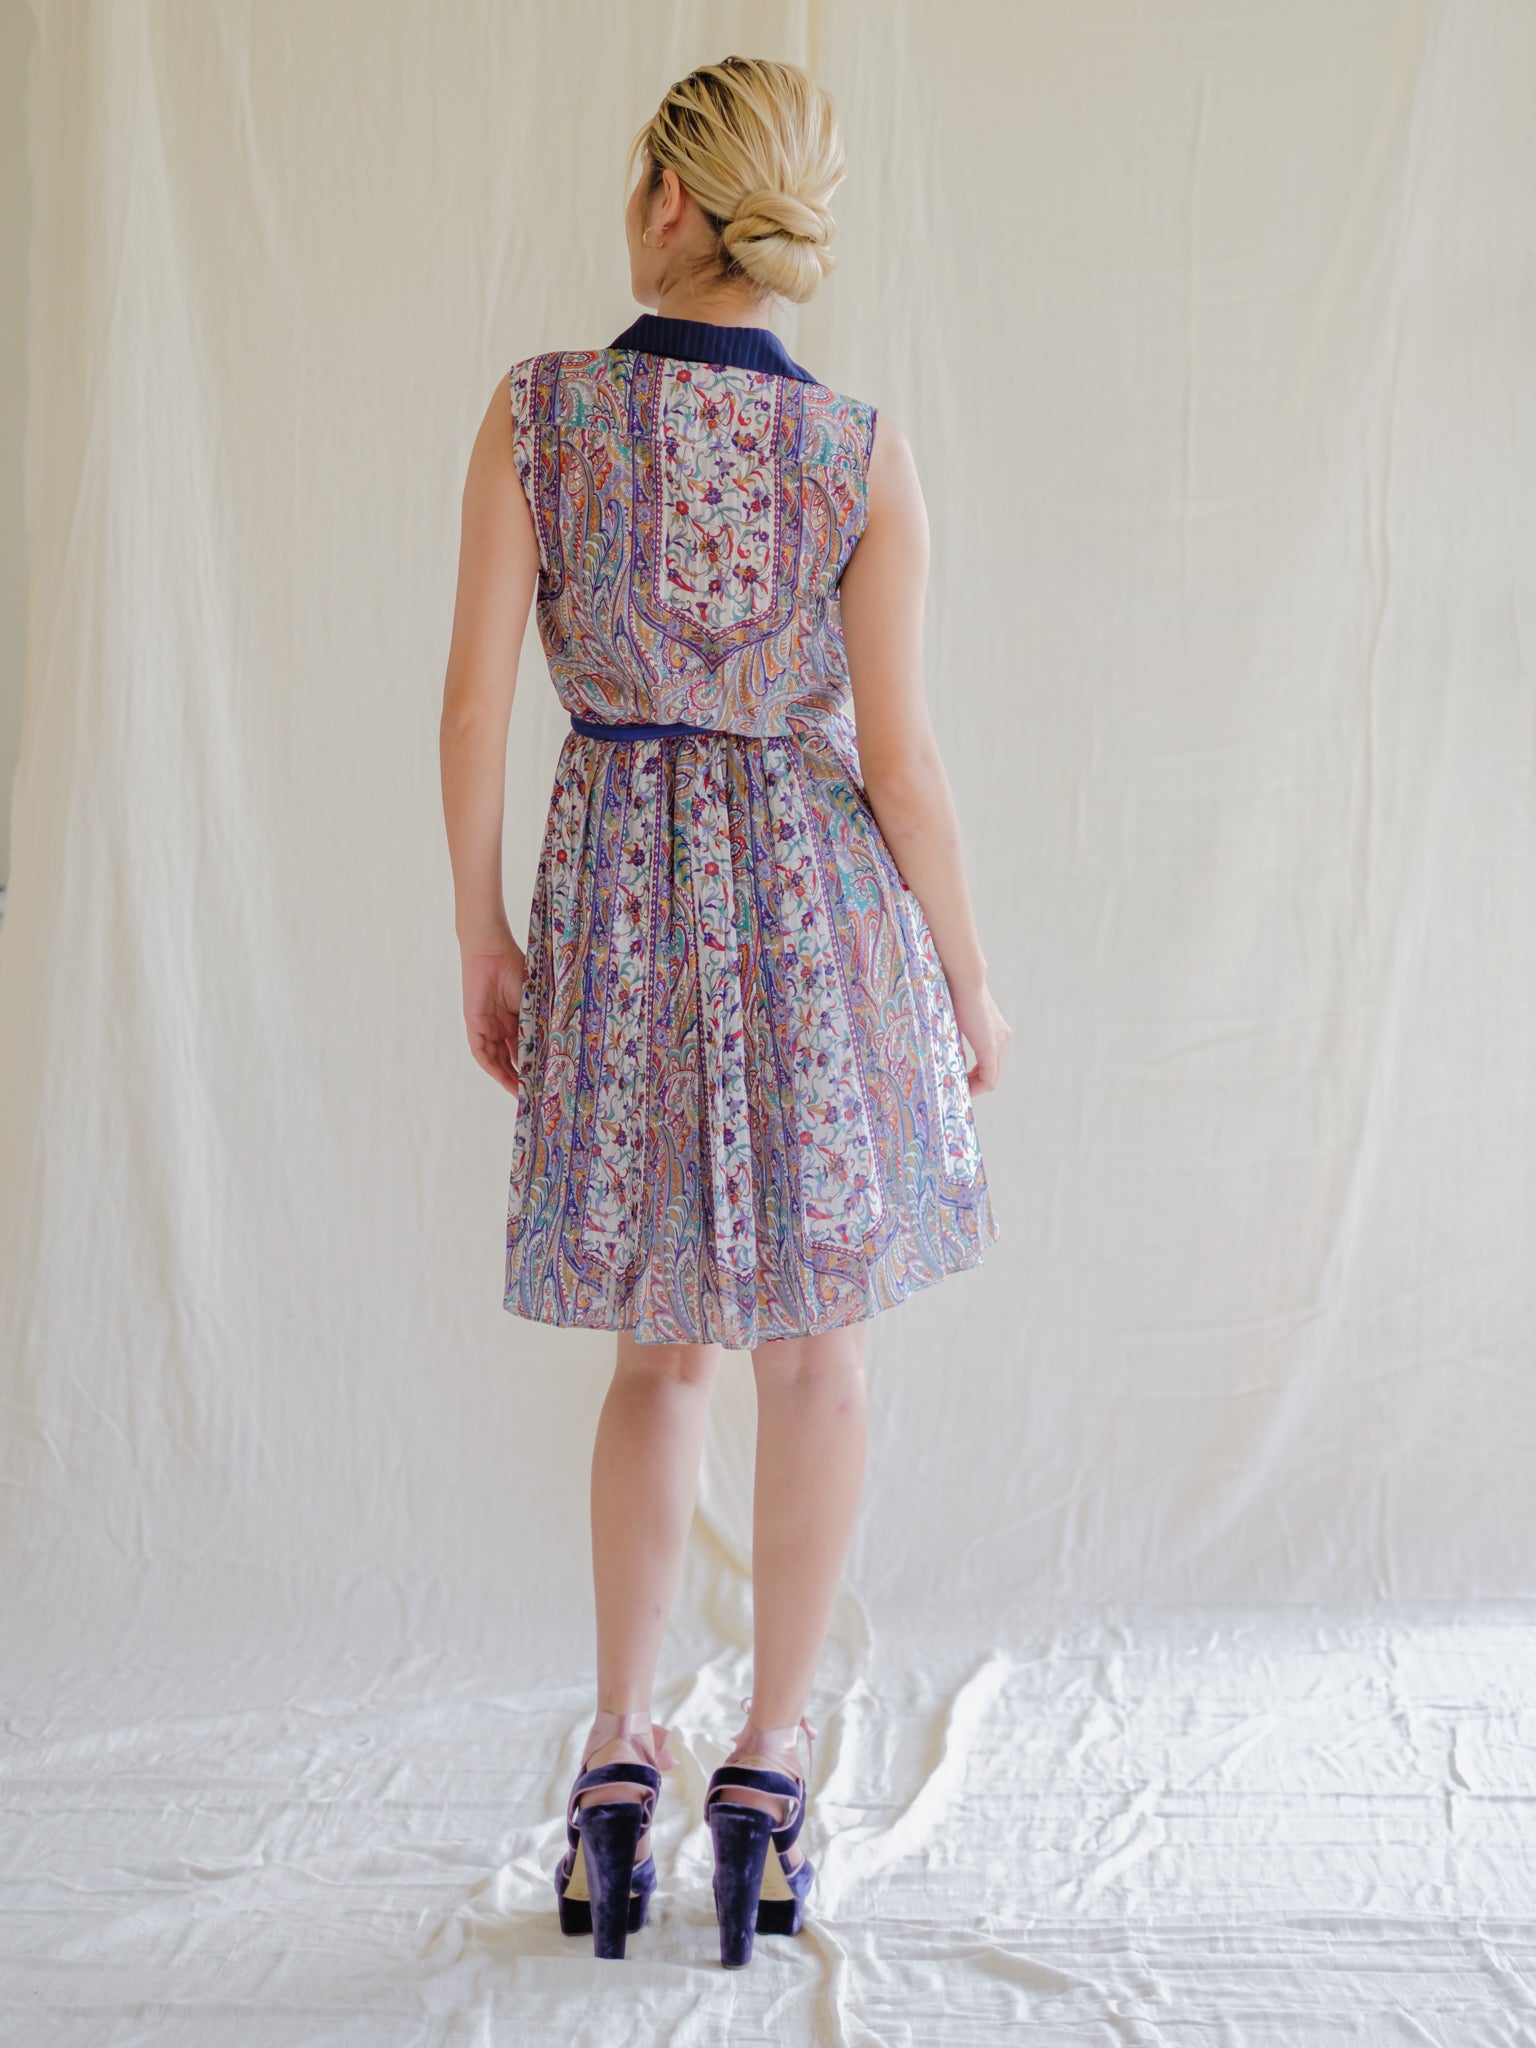 Vintage chiffon fabric dress